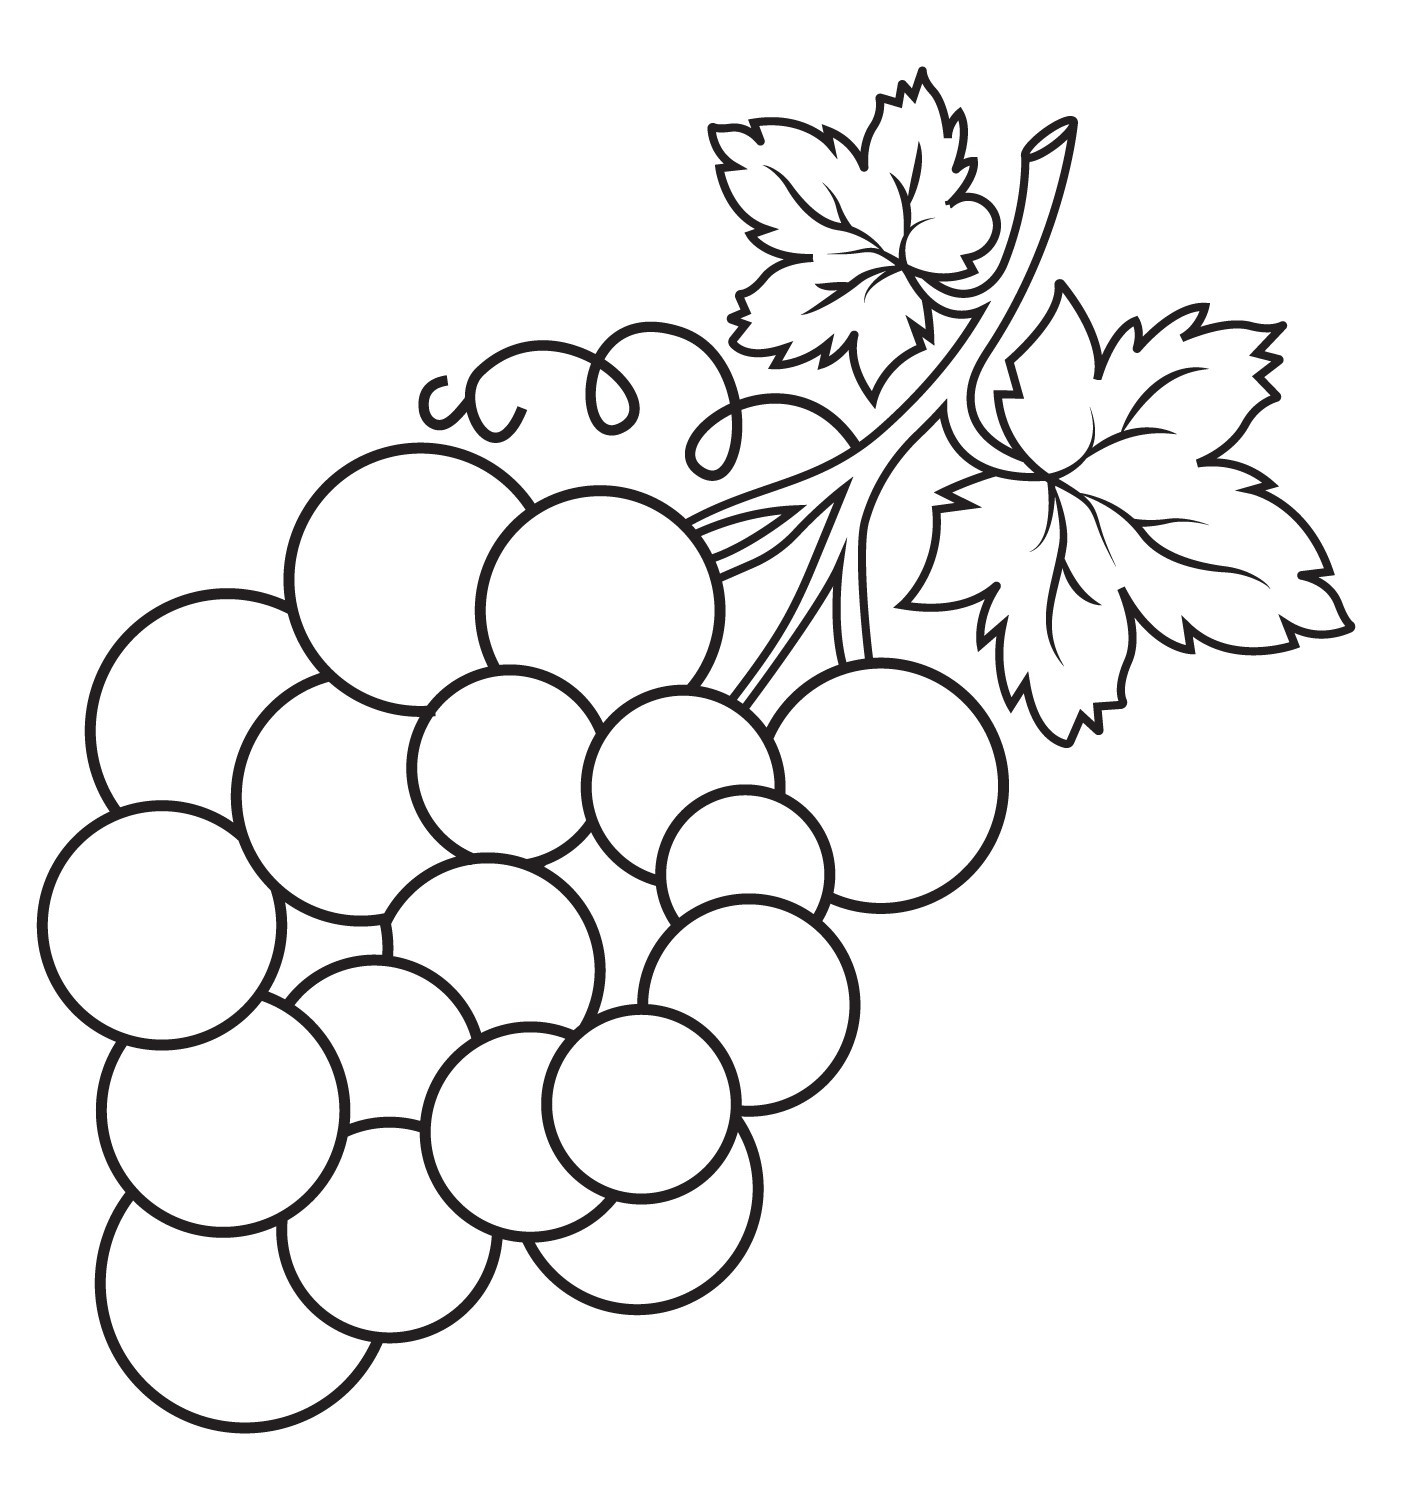 Раскраска для детей: ветка винограда с листьями